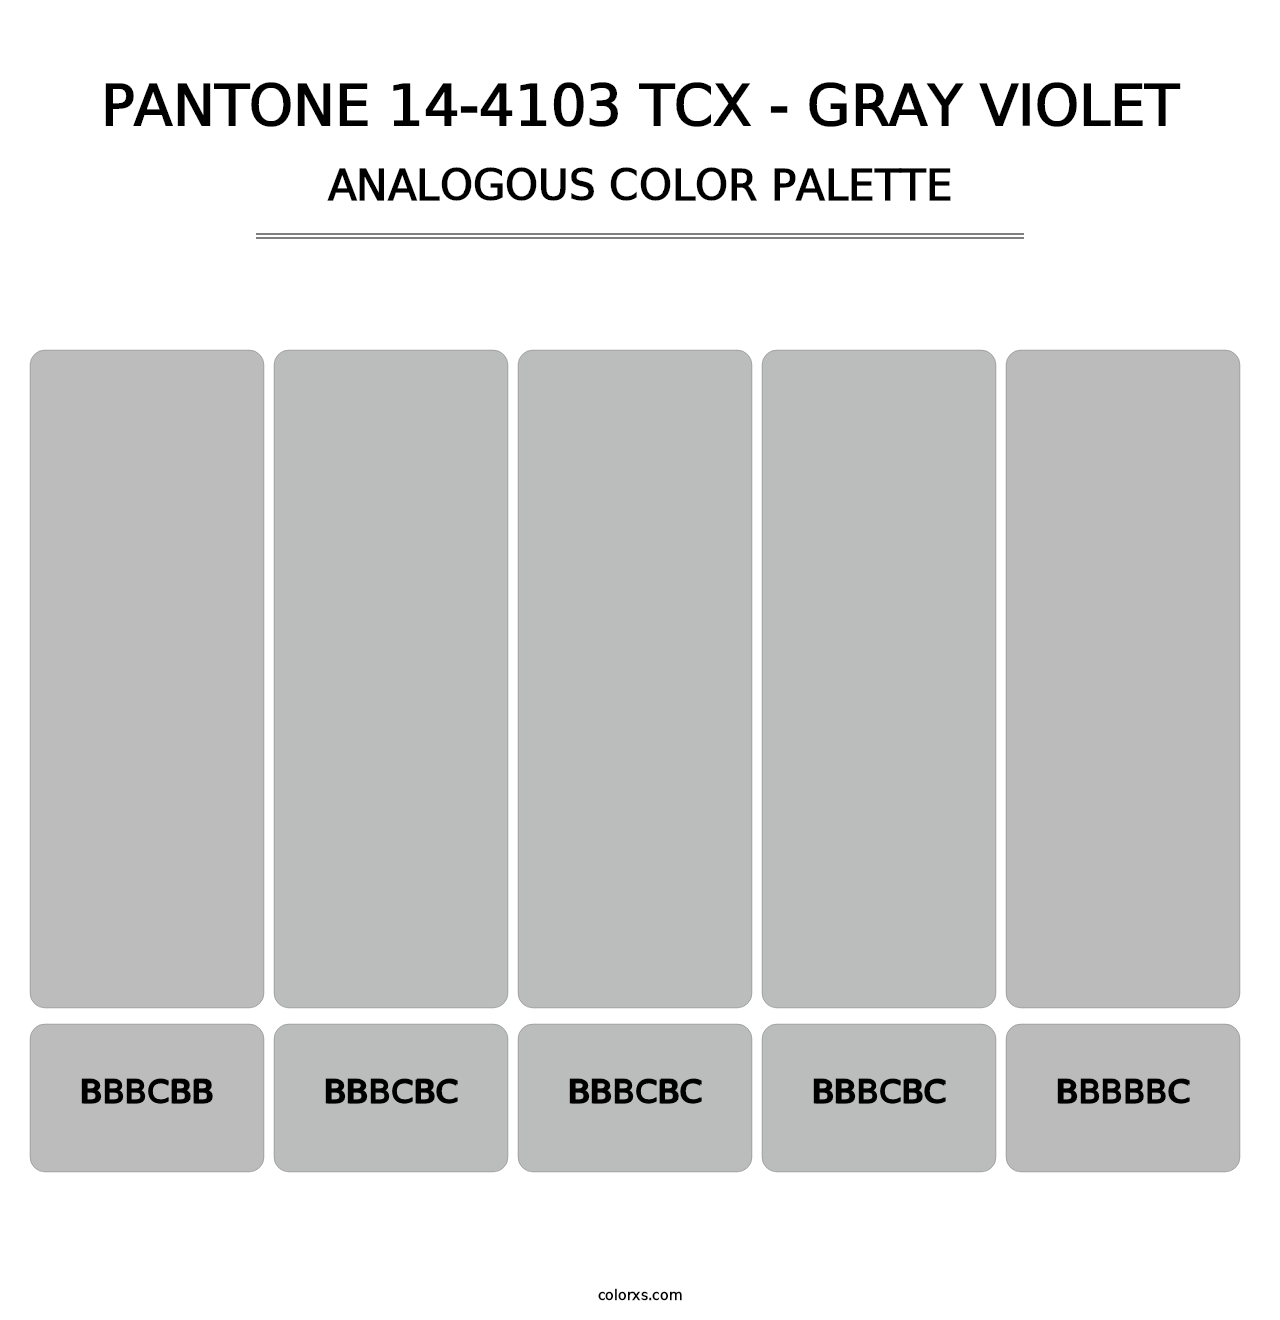 PANTONE 14-4103 TCX - Gray Violet - Analogous Color Palette